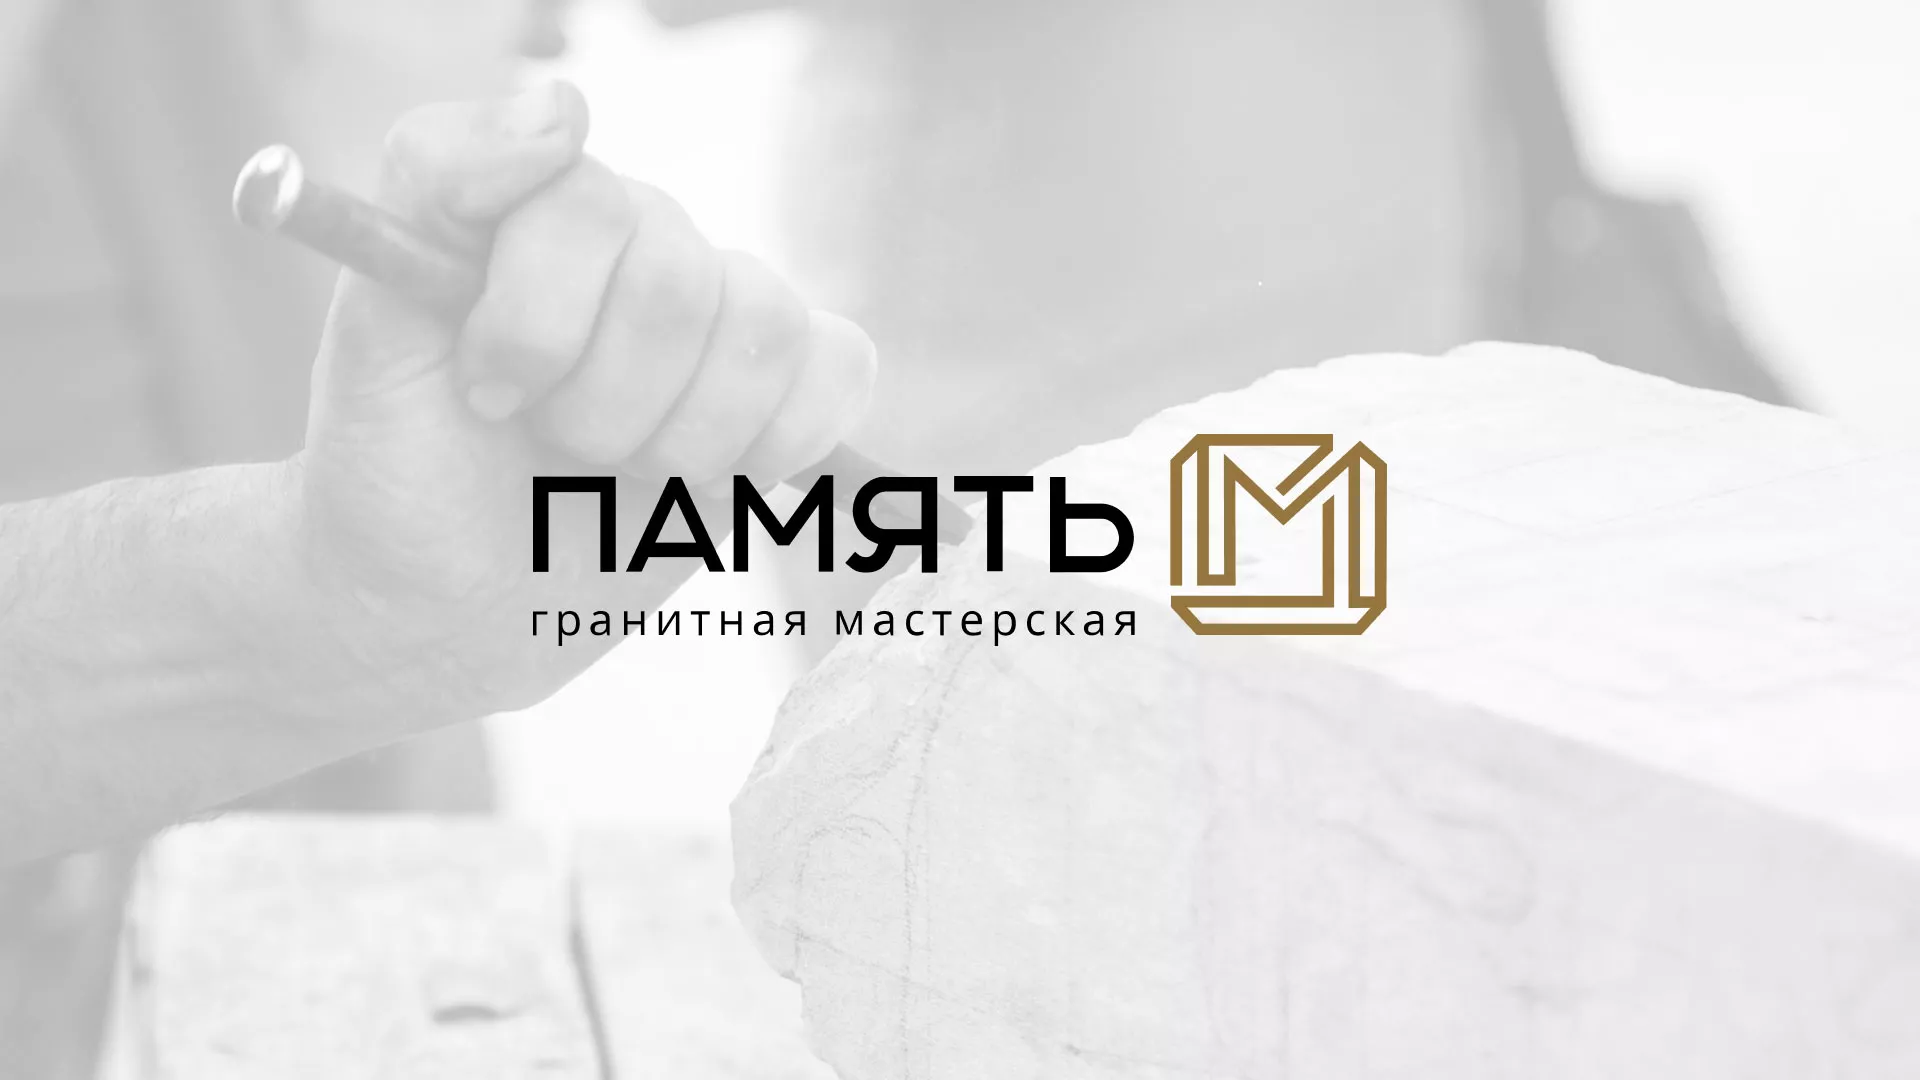 Разработка логотипа и сайта компании «Память-М» в Одинцово